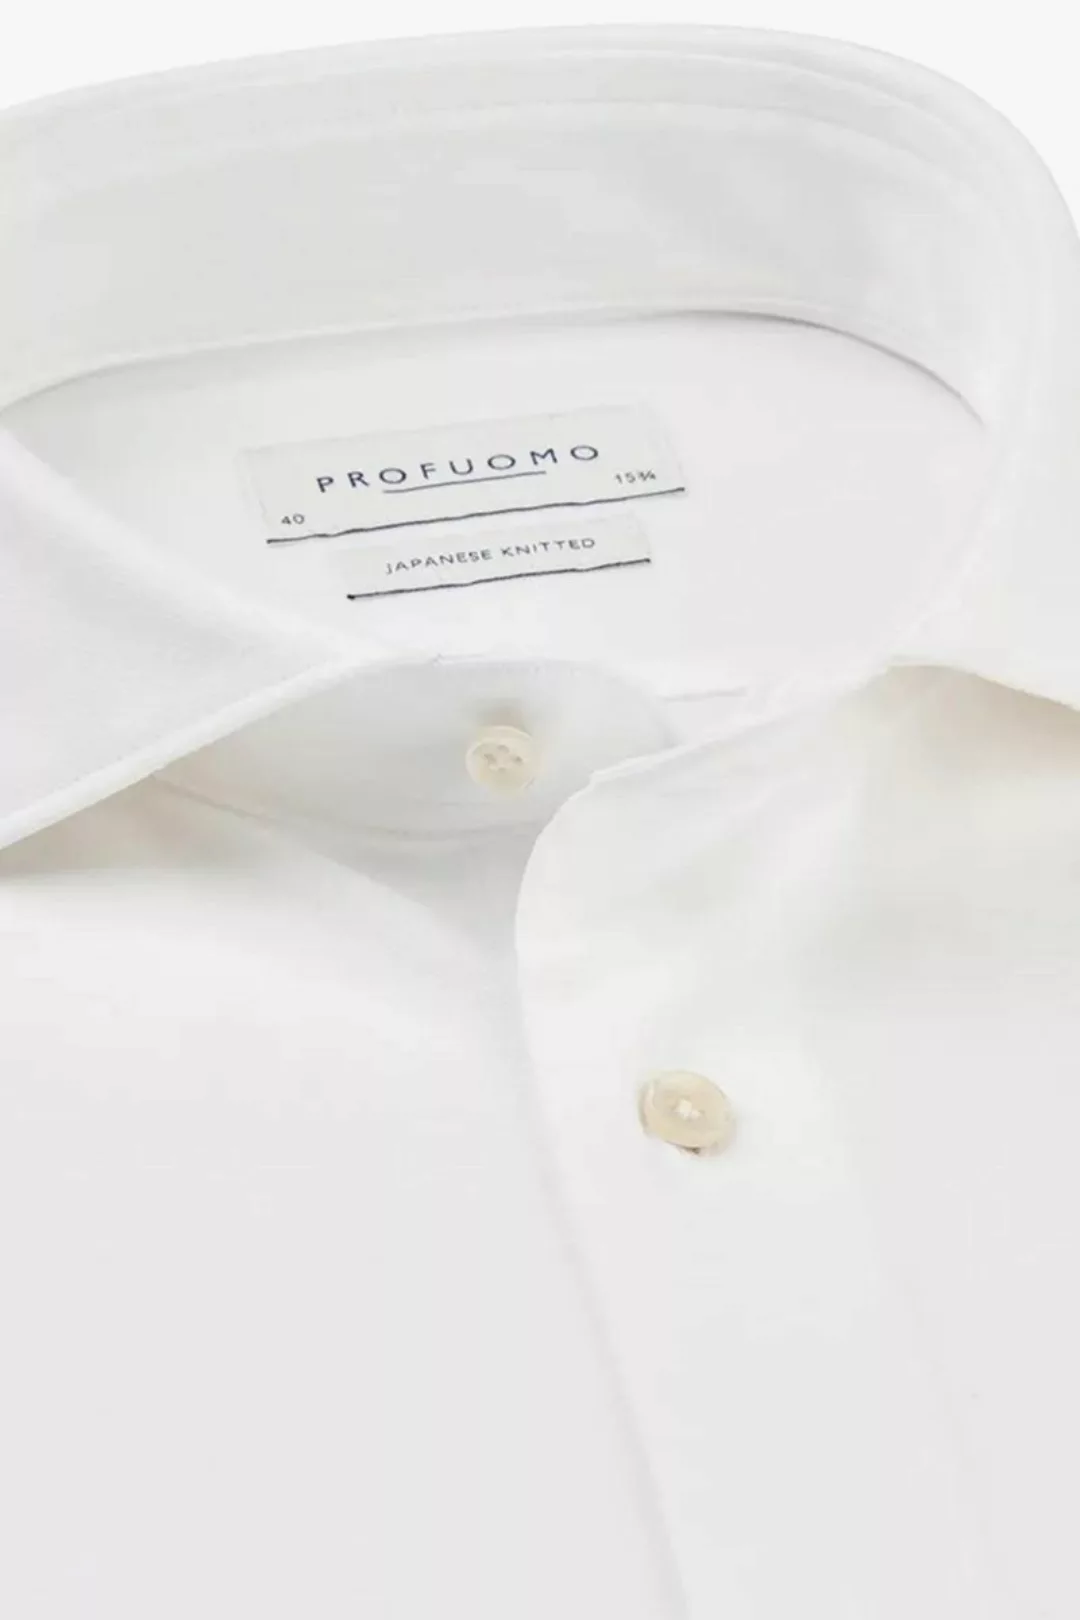 Profuomo Hemd Japanese Knitted Weiß - Größe 39 günstig online kaufen